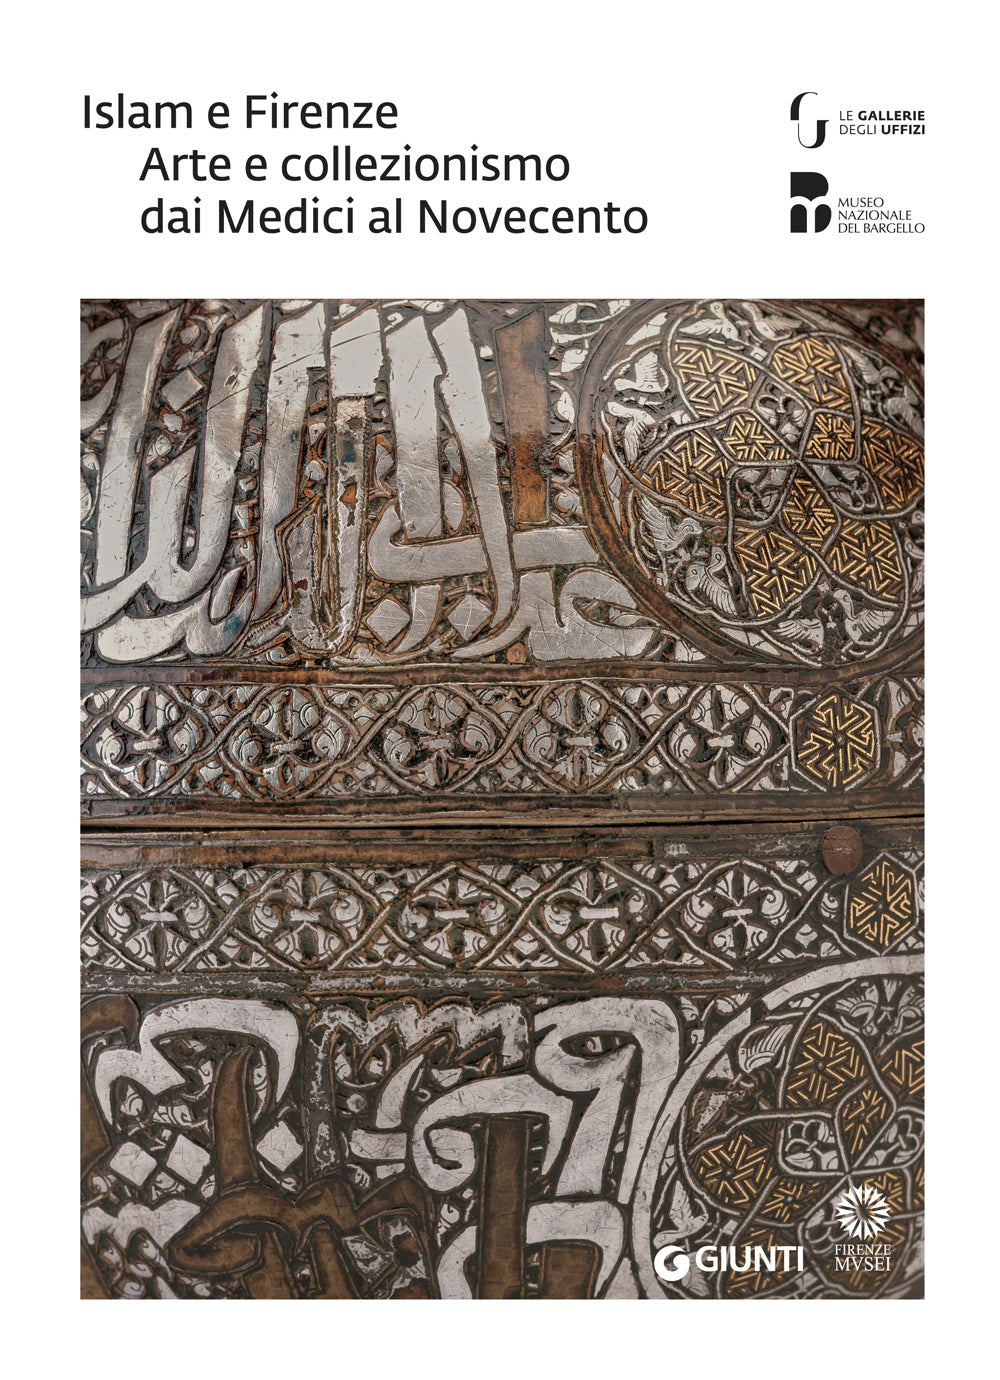 Islam e Firenze. Arte e collezionismo dai Medici al Novecento